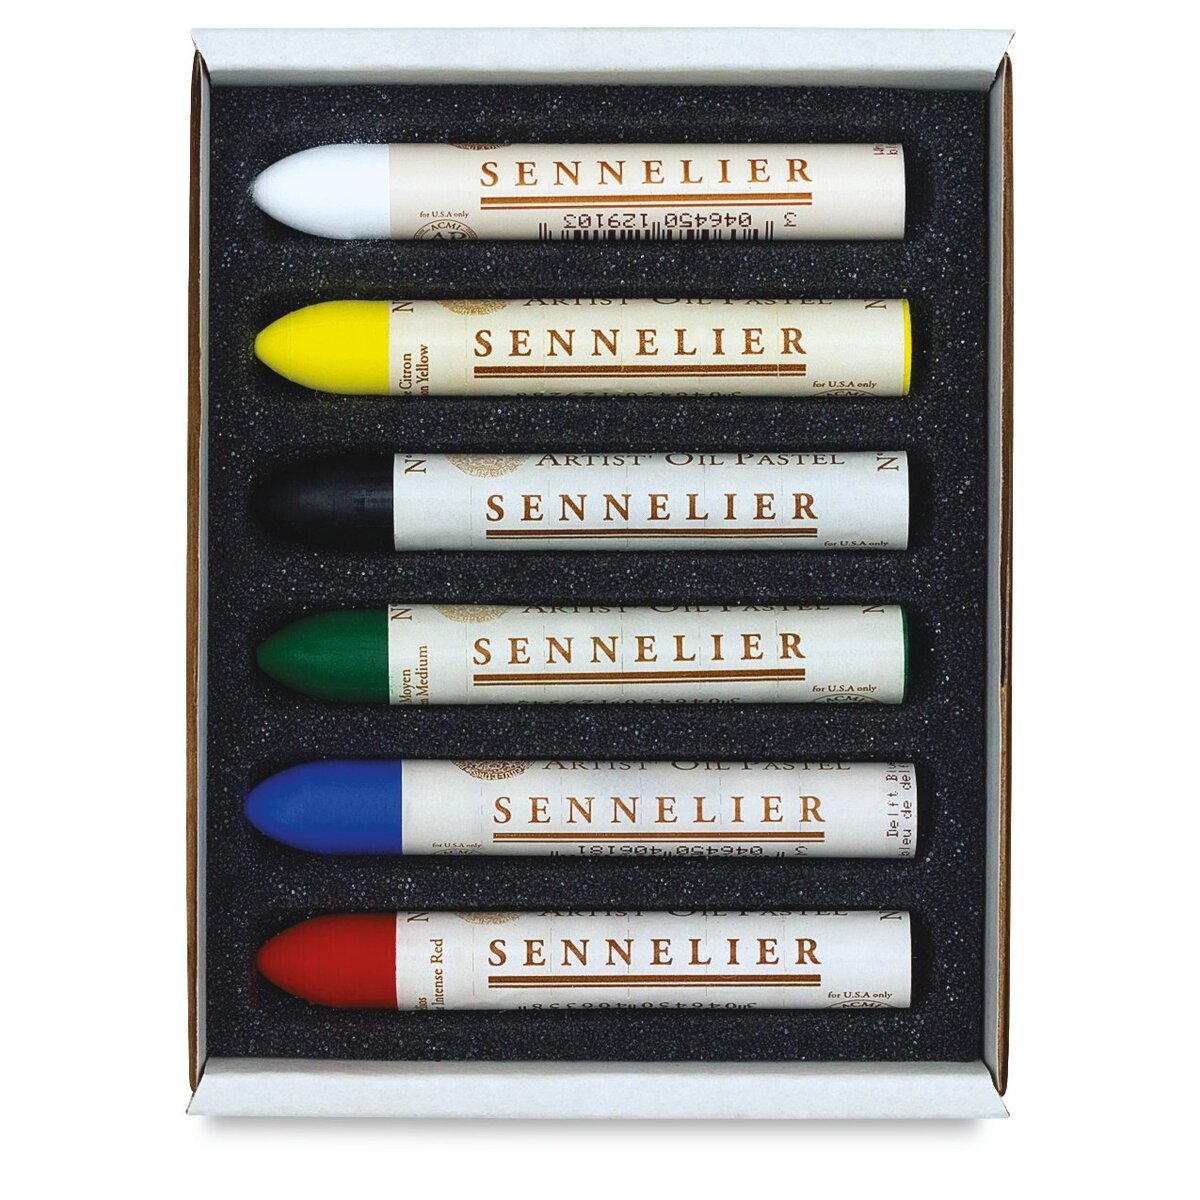 Sennelier Oil Pastel Sets at New River Art & Fiber